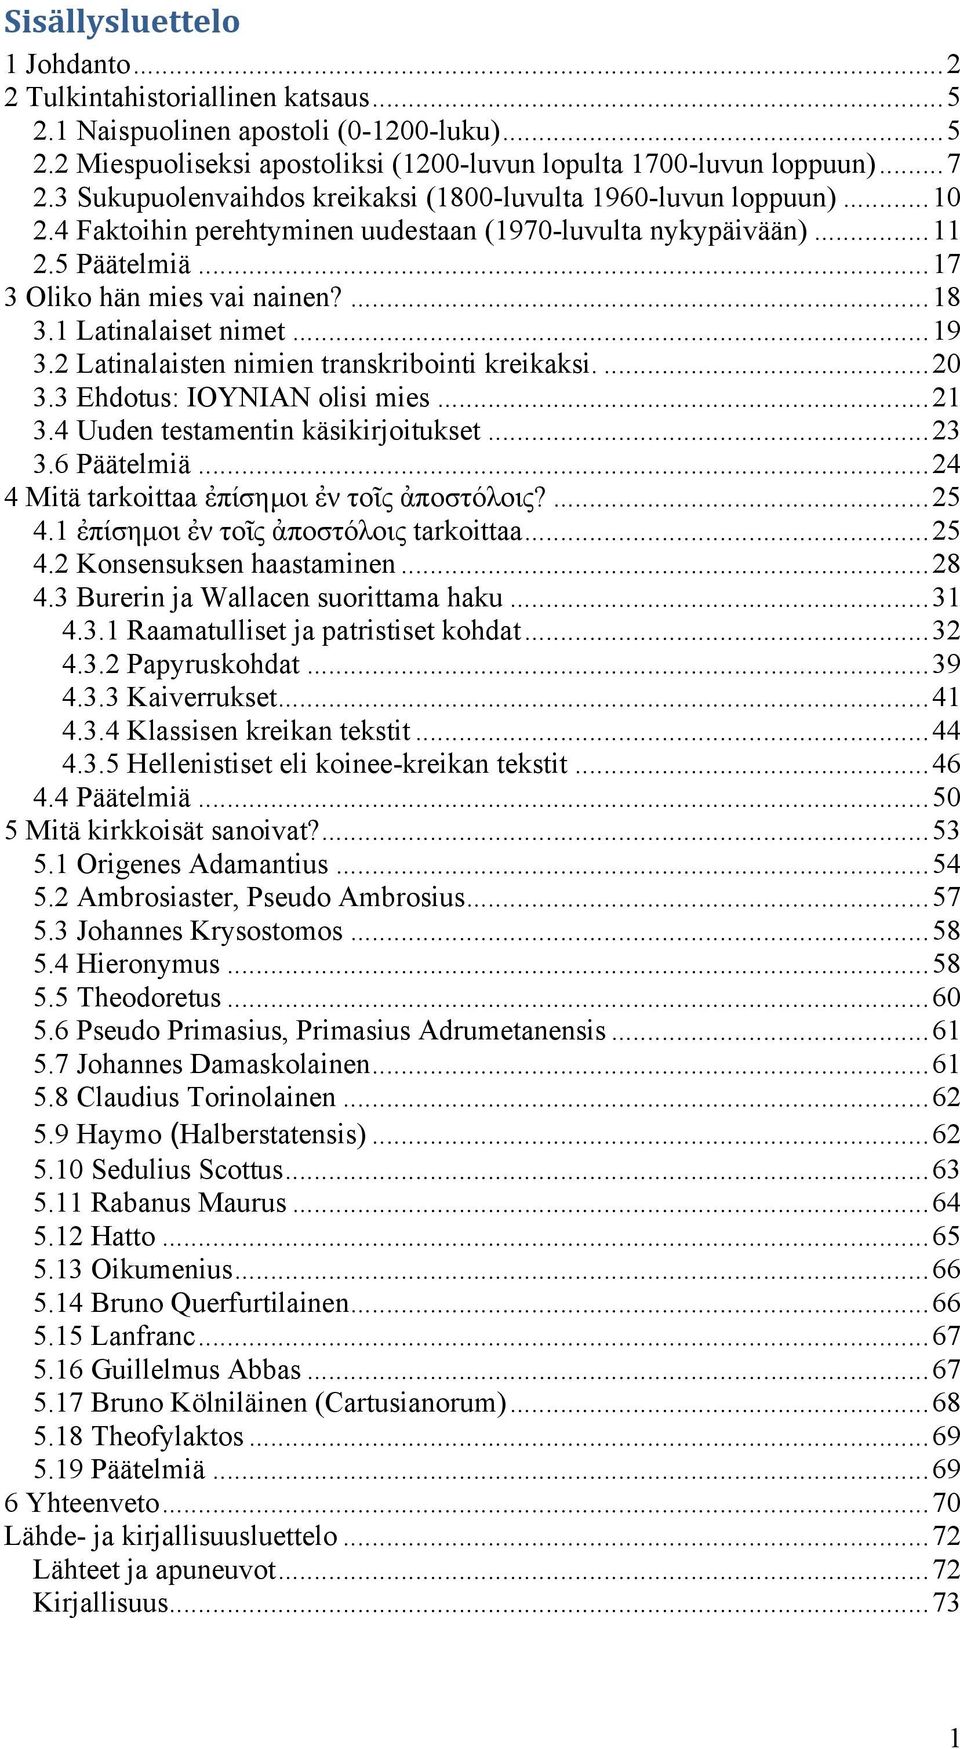 1 Latinalaiset nimet...19 3.2 Latinalaisten nimien transkribointi kreikaksi....20 3.3 Ehdotus: IOYNIAN olisi mies...21 3.4 Uuden testamentin käsikirjoitukset...23 3.6 Päätelmiä.